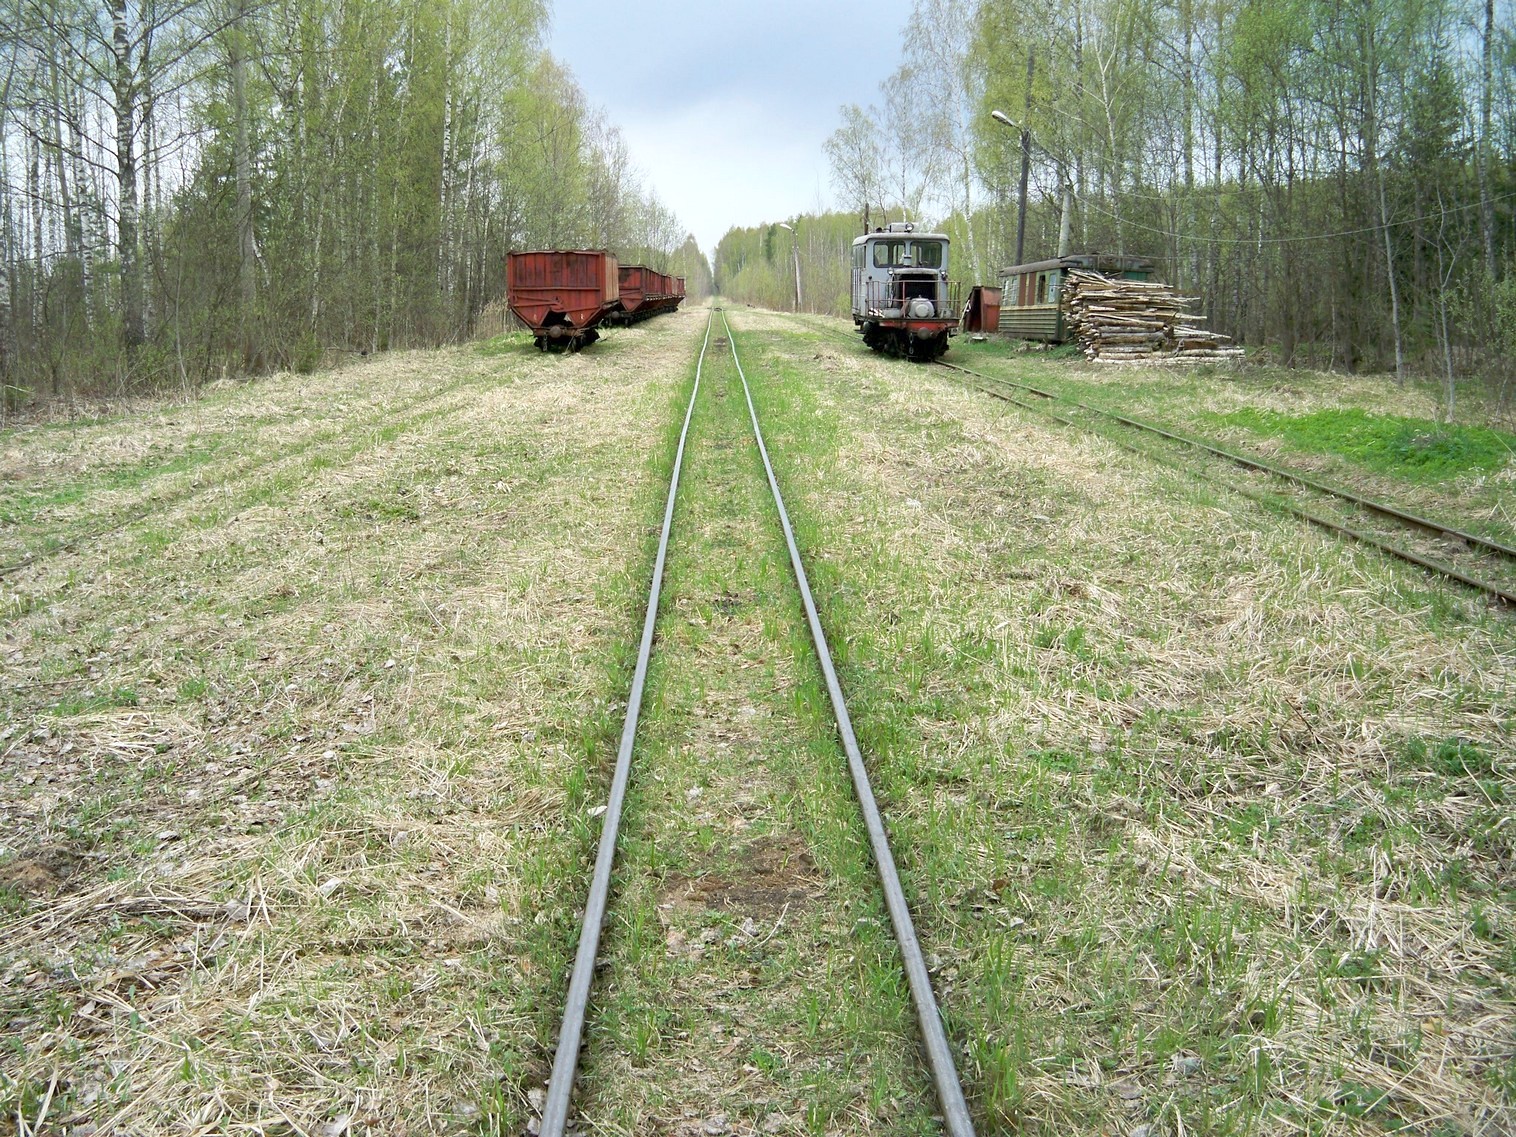 Узкоколейная железная дорога Васильевского предприятия промышленного железнодорожного транспорта  — фотографии, сделанные в 2014 году (часть 14)